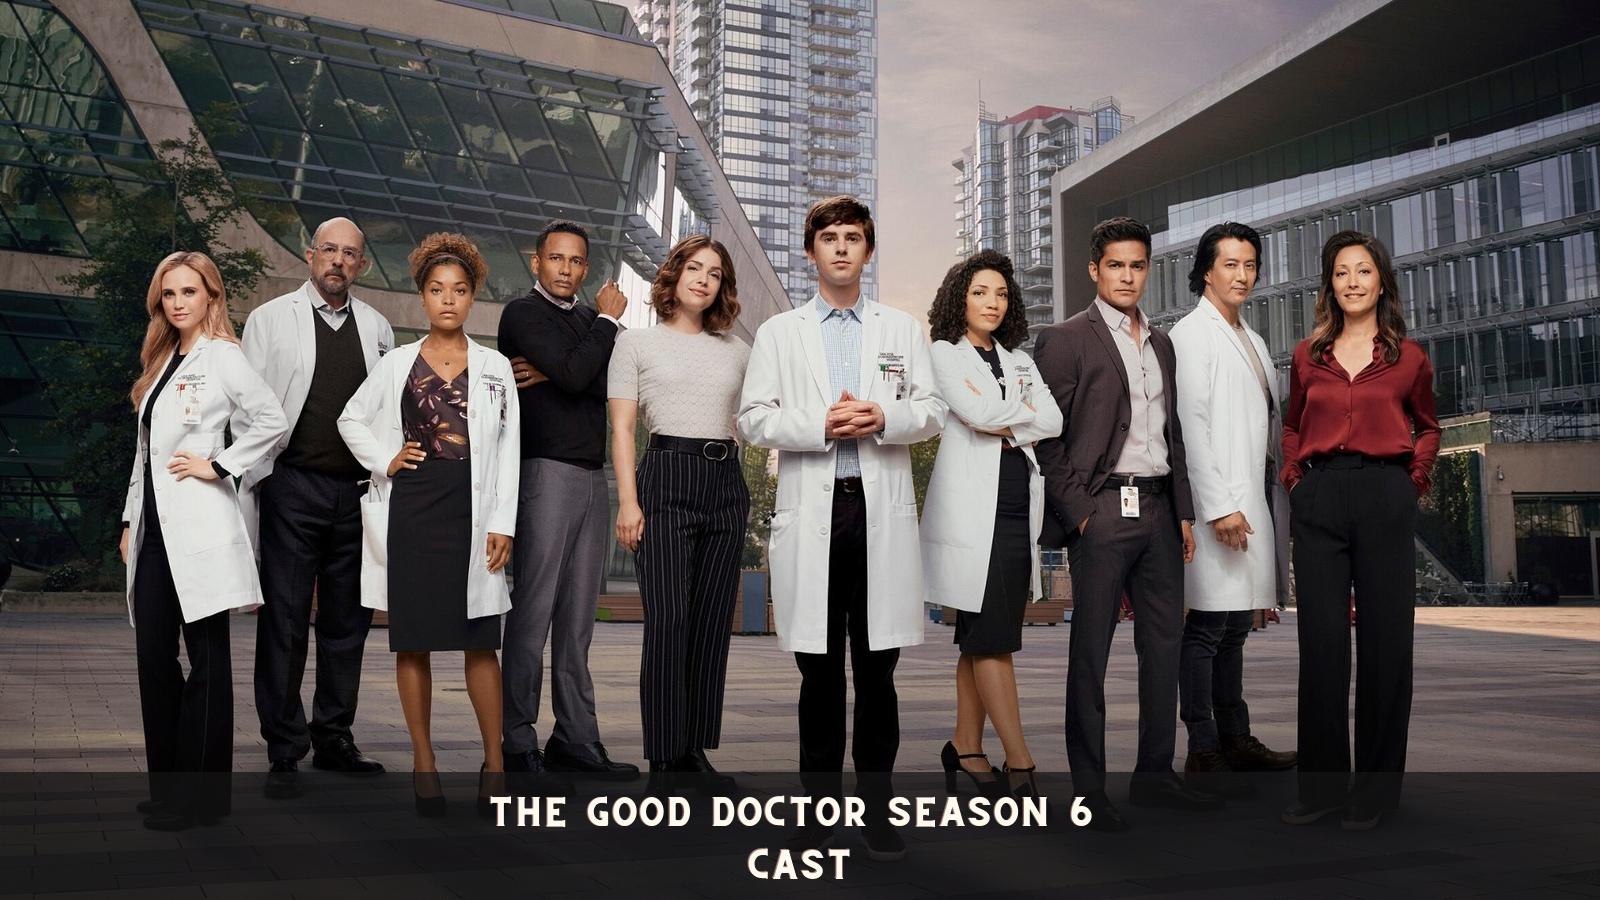 The Good Doctor Season 6 Cast